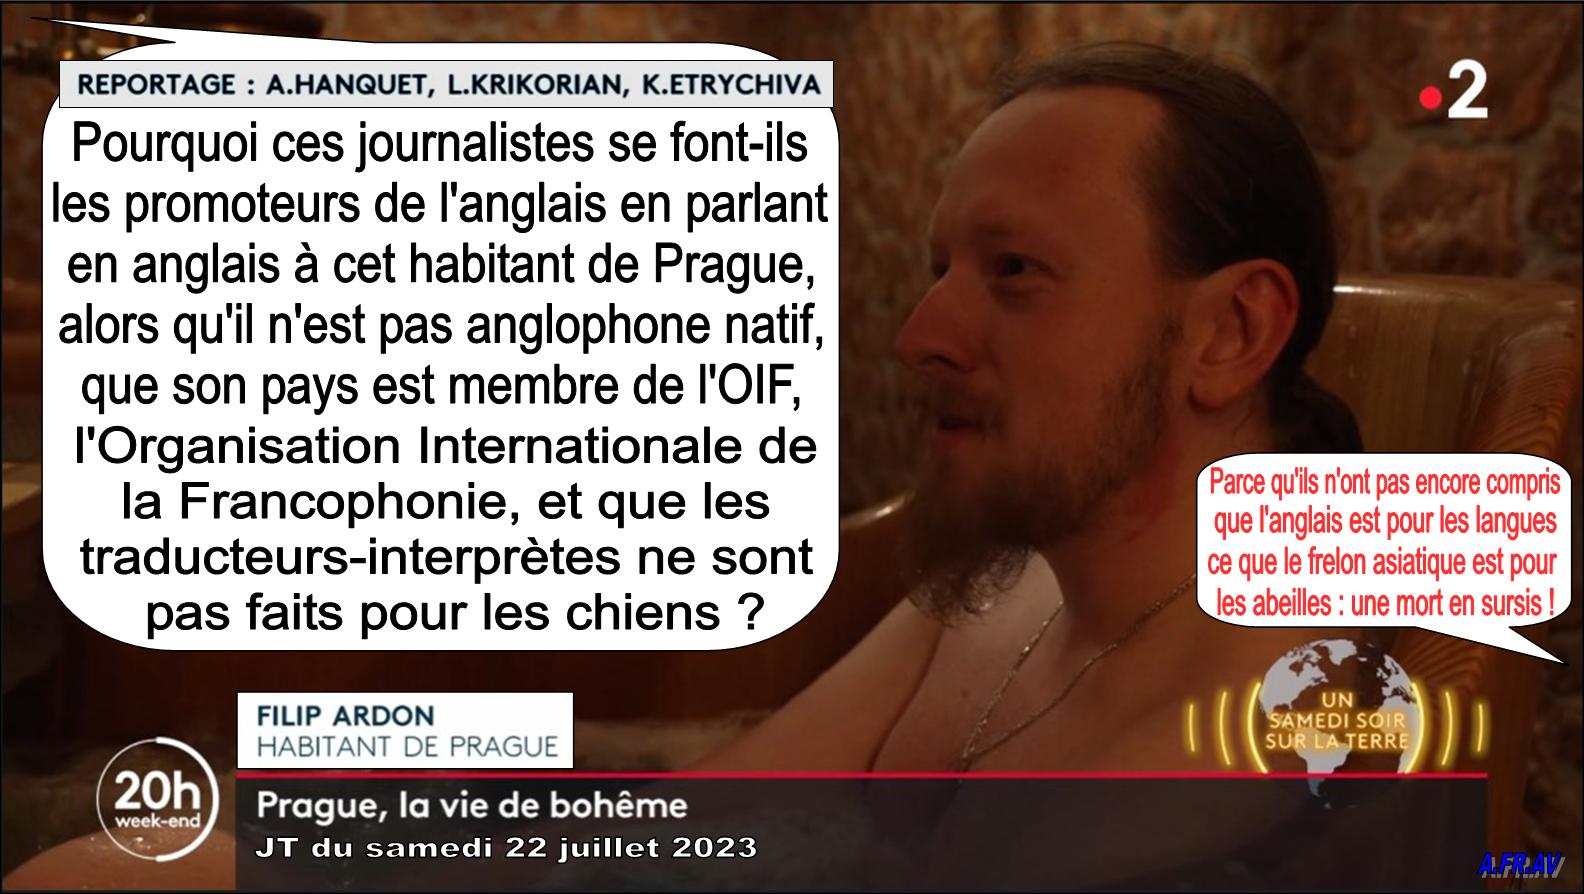 Anaïs Hanquet, Loup Krikorian, K. Etrychiva, reportage sur Prague, Filip Ardon, France 2, France Télévisions